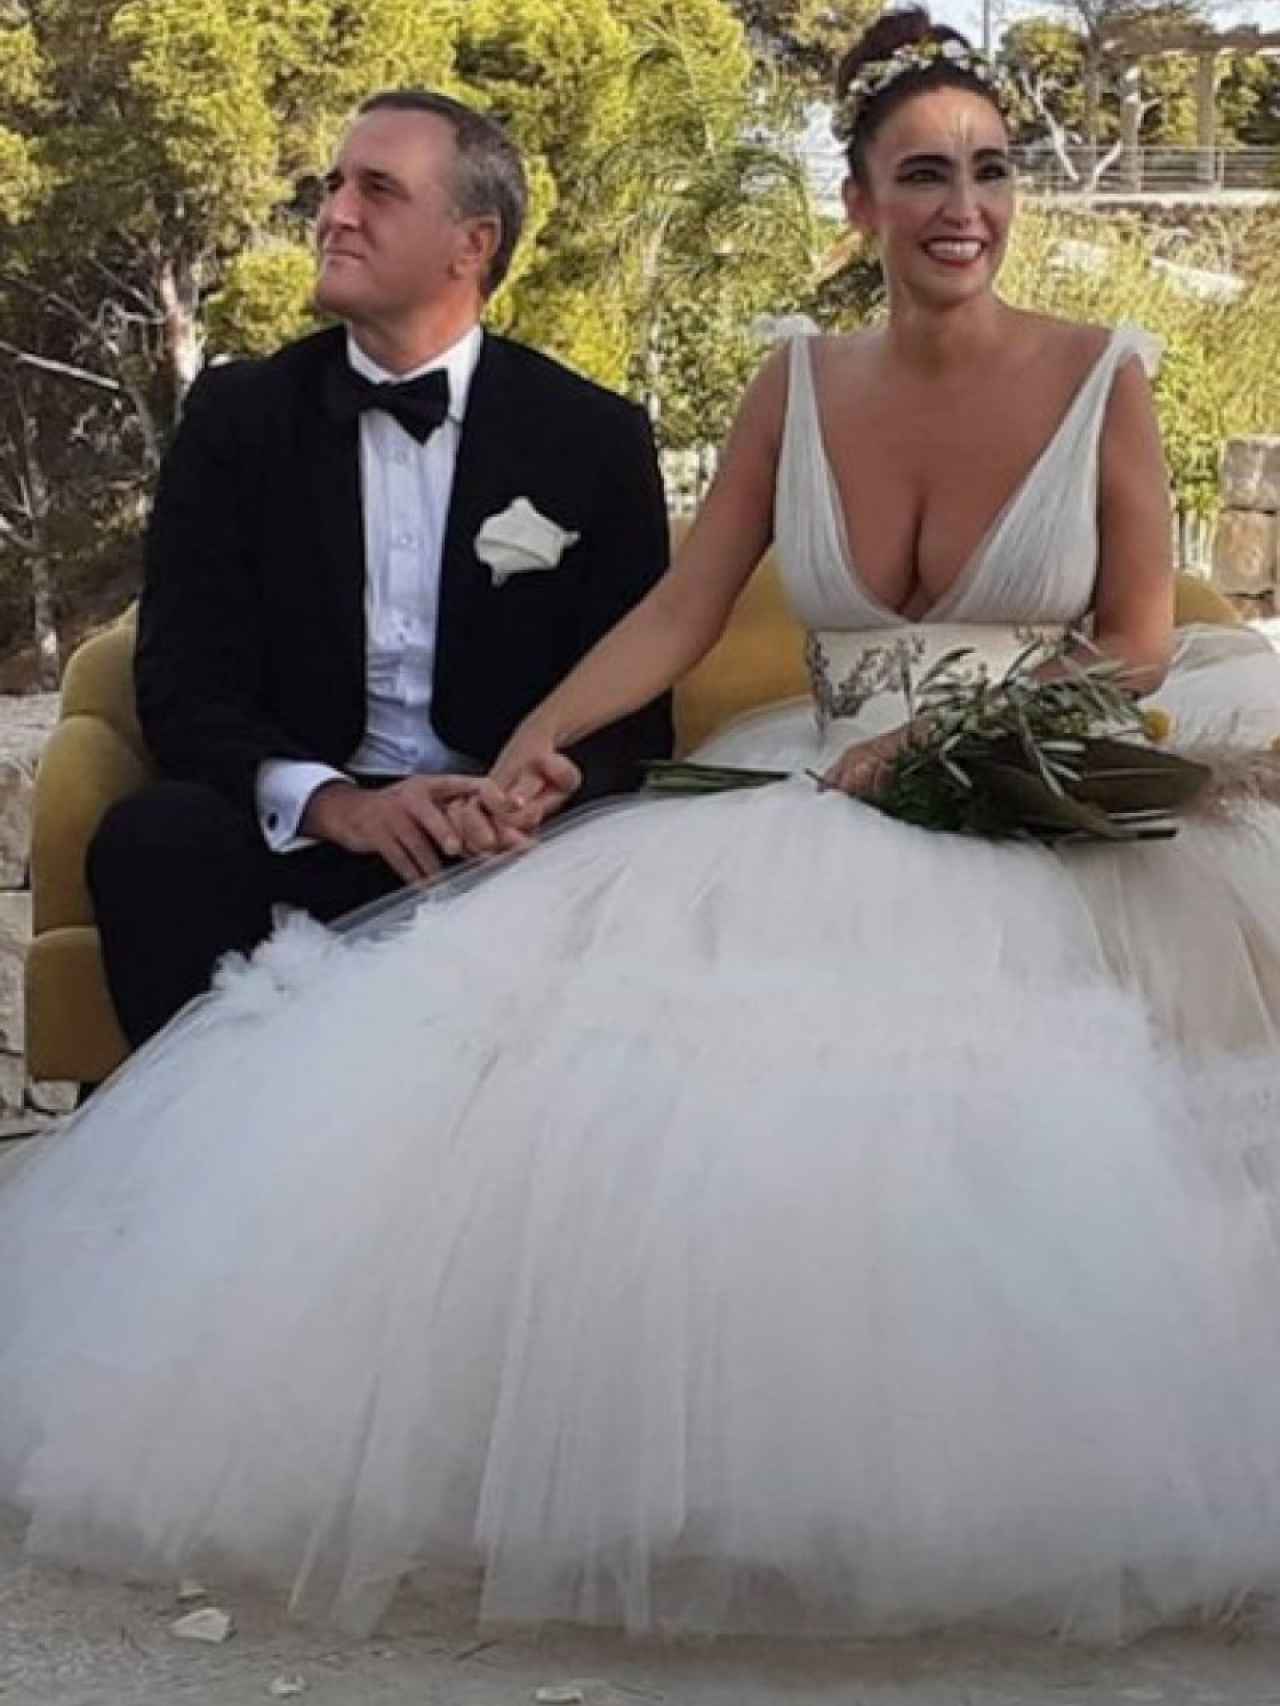 La estilista Cristina Rodríguez junto a su marido, el empresario Raúl García, el día de su boda.